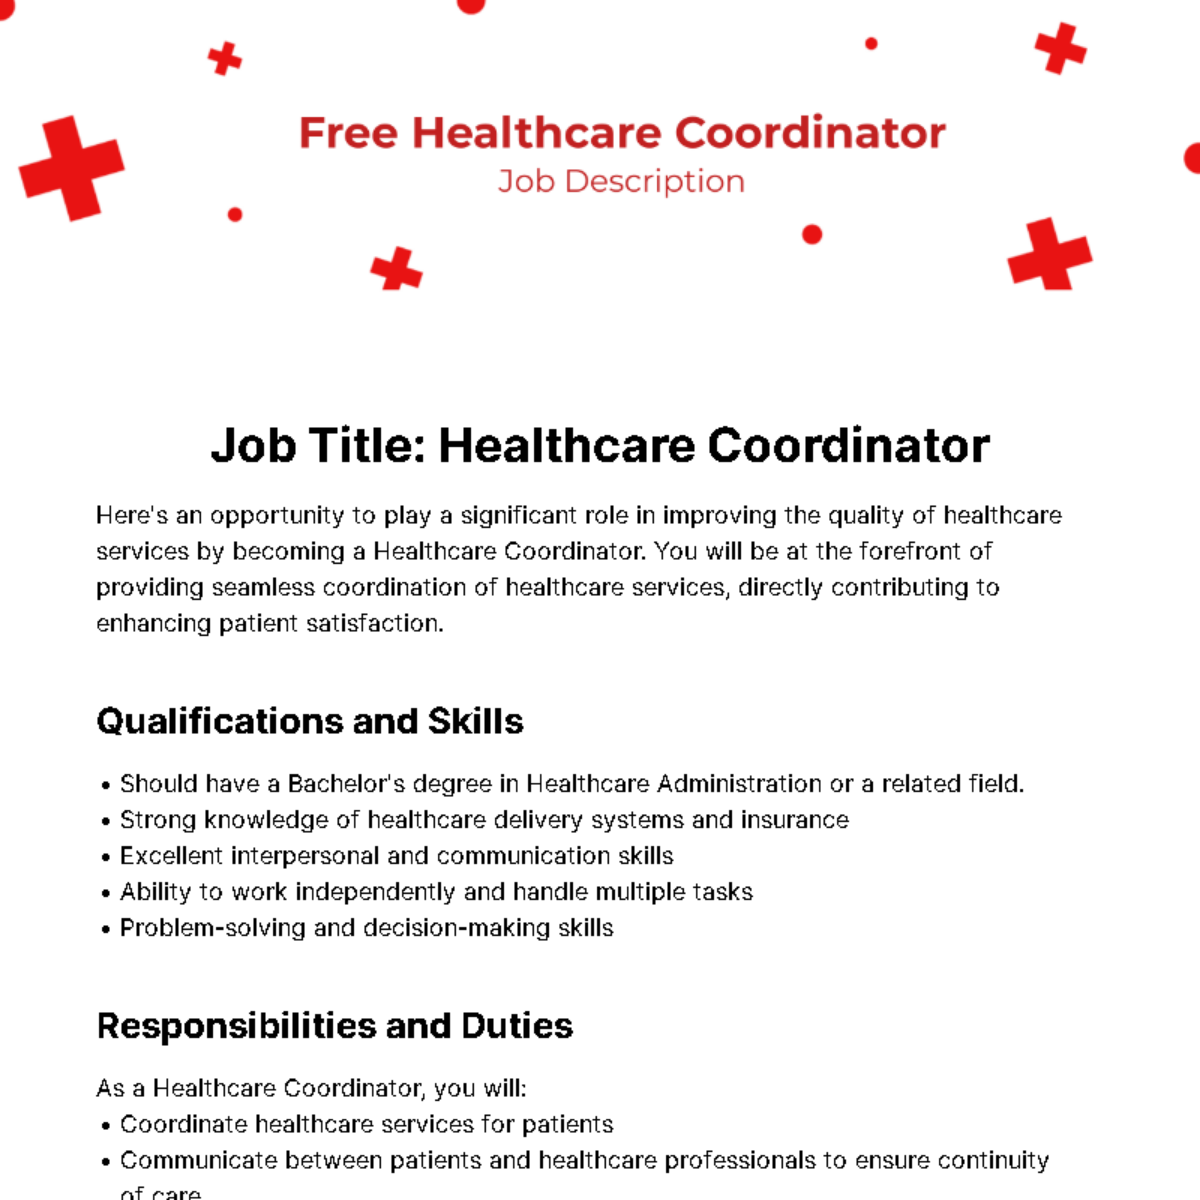 Free Healthcare Coordinator Job Description Template